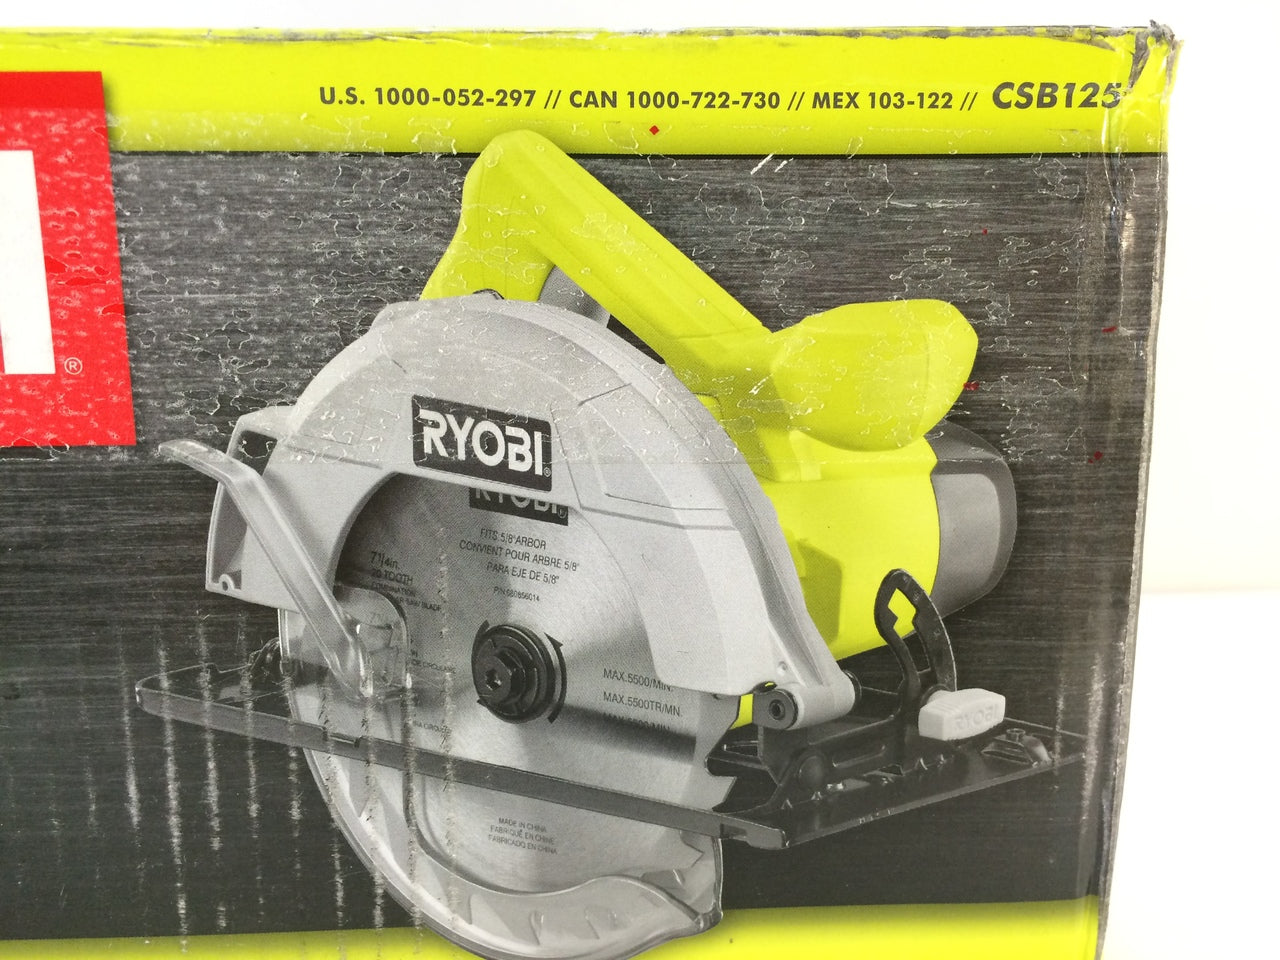 Ryobi CSB125 13-Amp 7-1/4 in. Corded Circular Saw – NT Electronics LLC